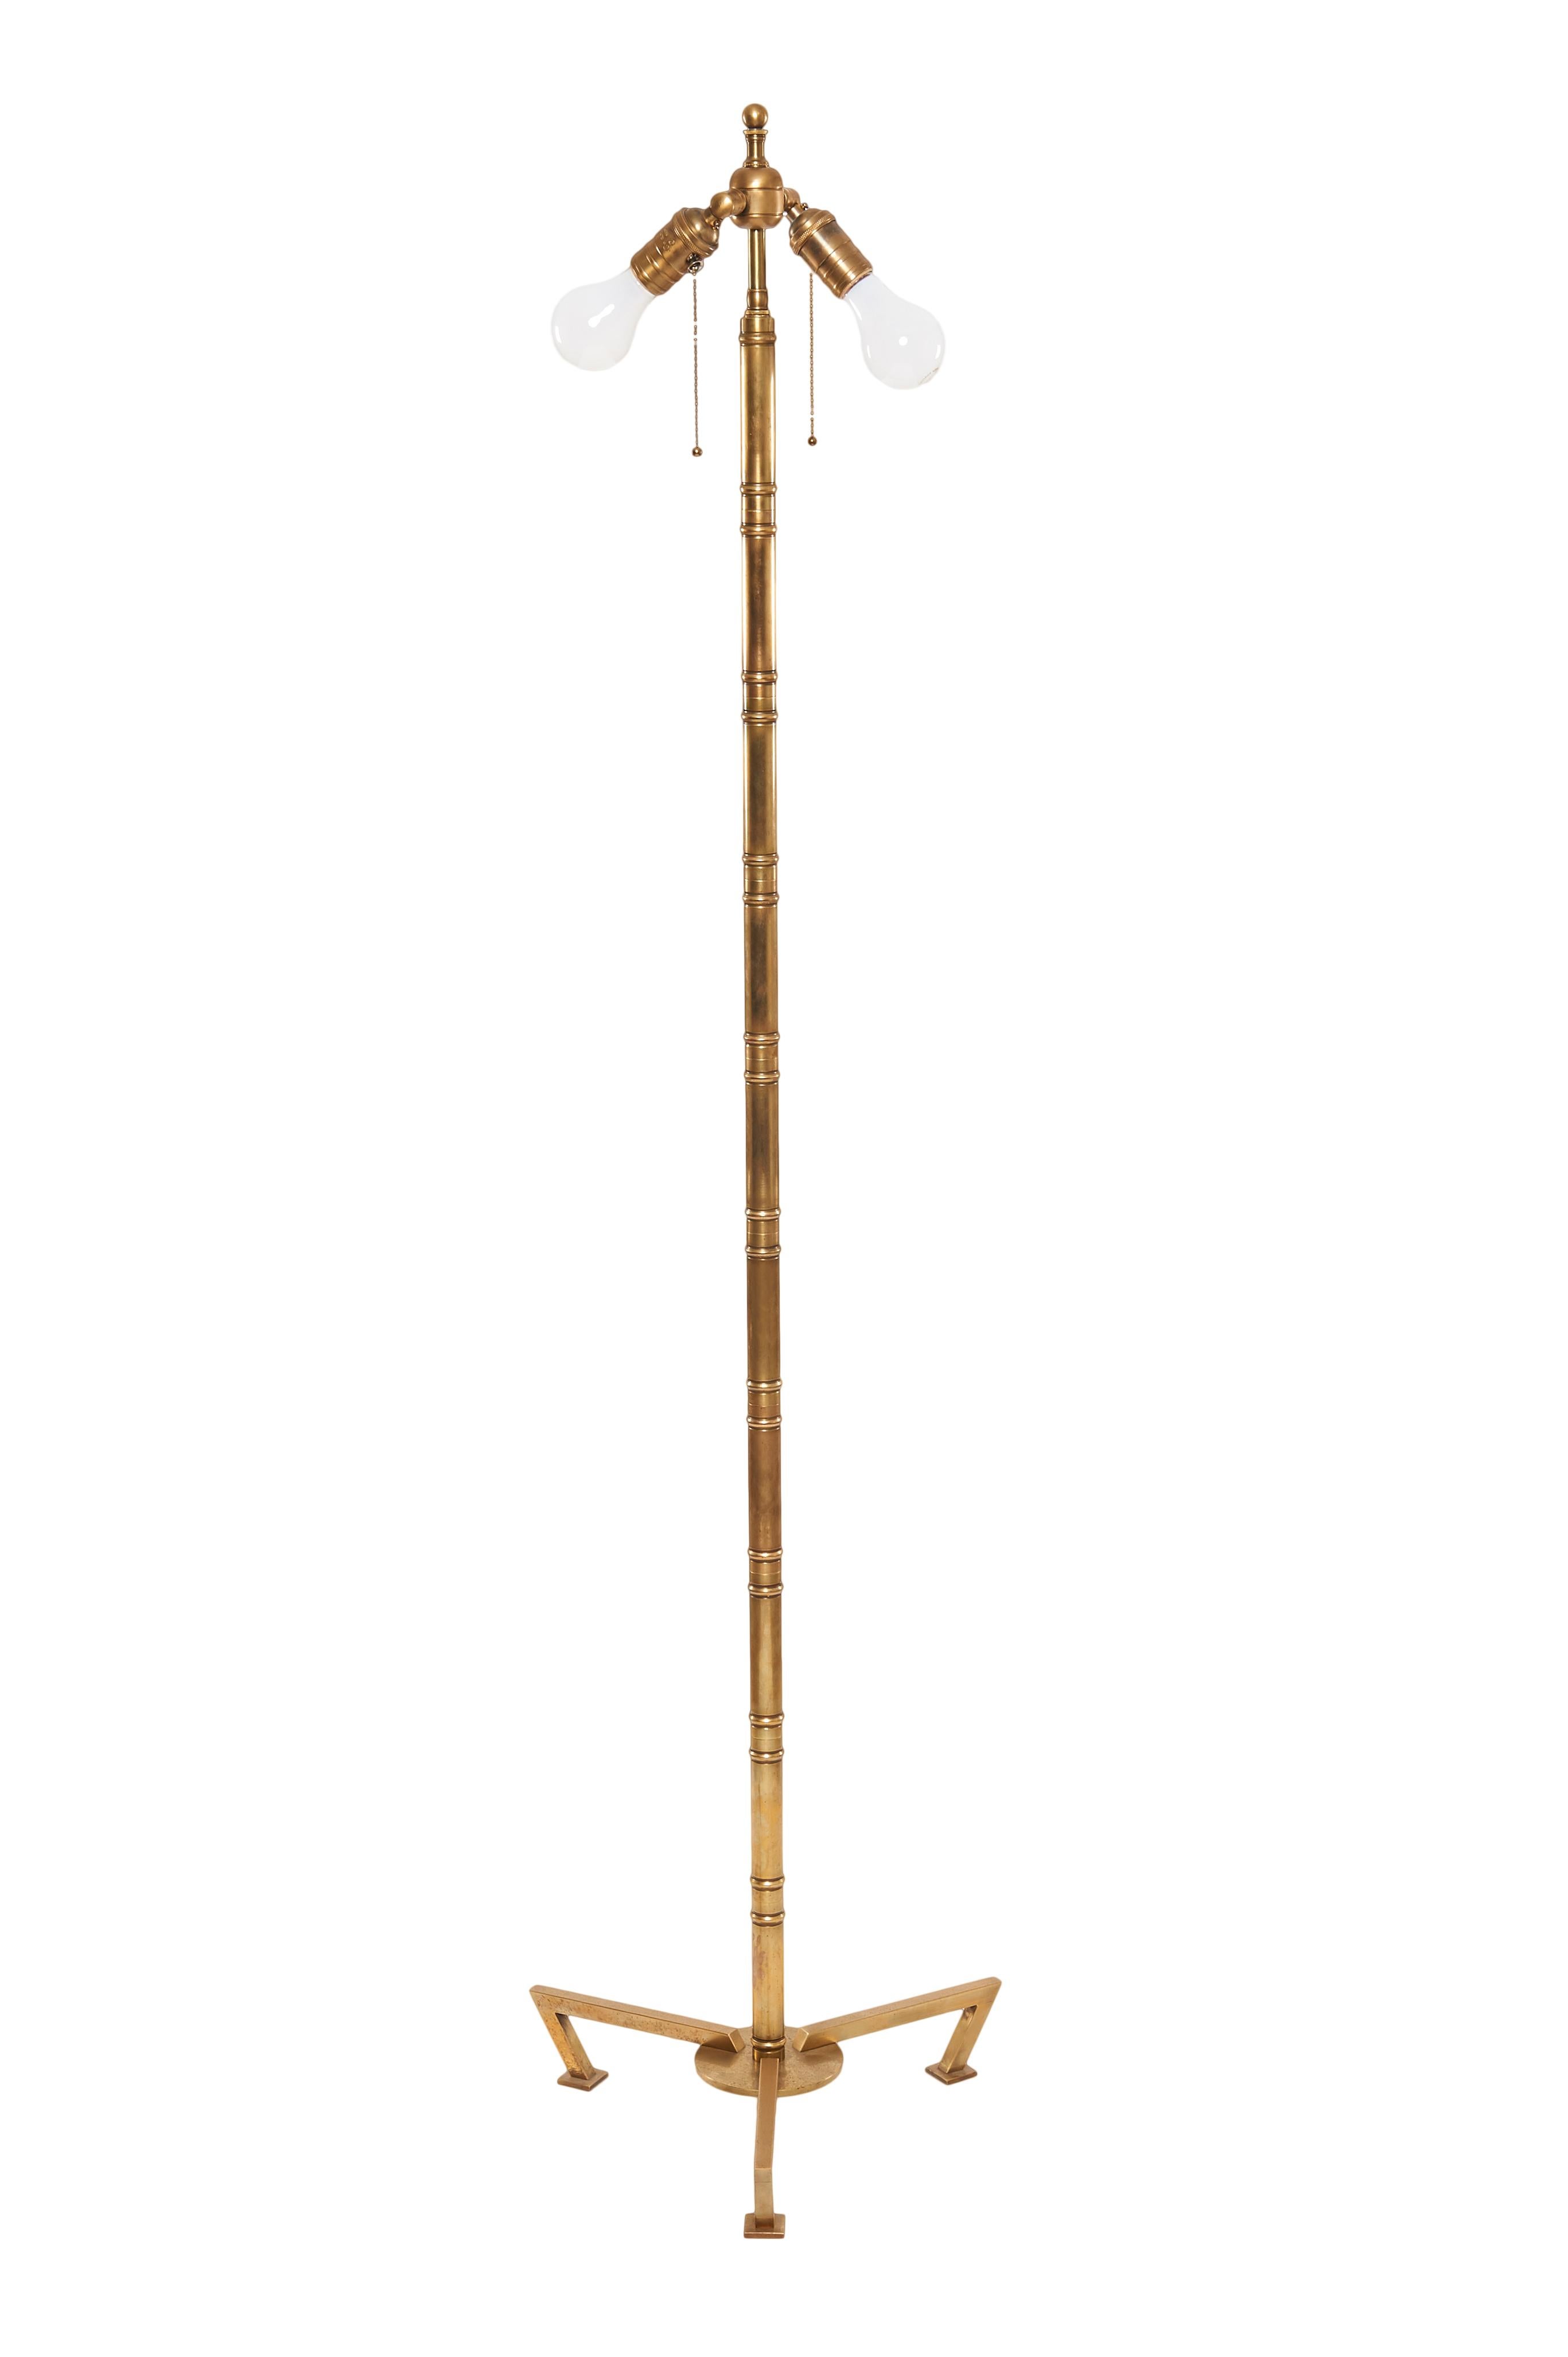 Paire de lampadaires en bambou bronze du milieu du siècle par Robert Altman ; y compris les abat-jours en papier naturel comme montré. Deux prises de chaise à tirette avec cordon de soie couleur bronze assorti. Excellent état vintage.